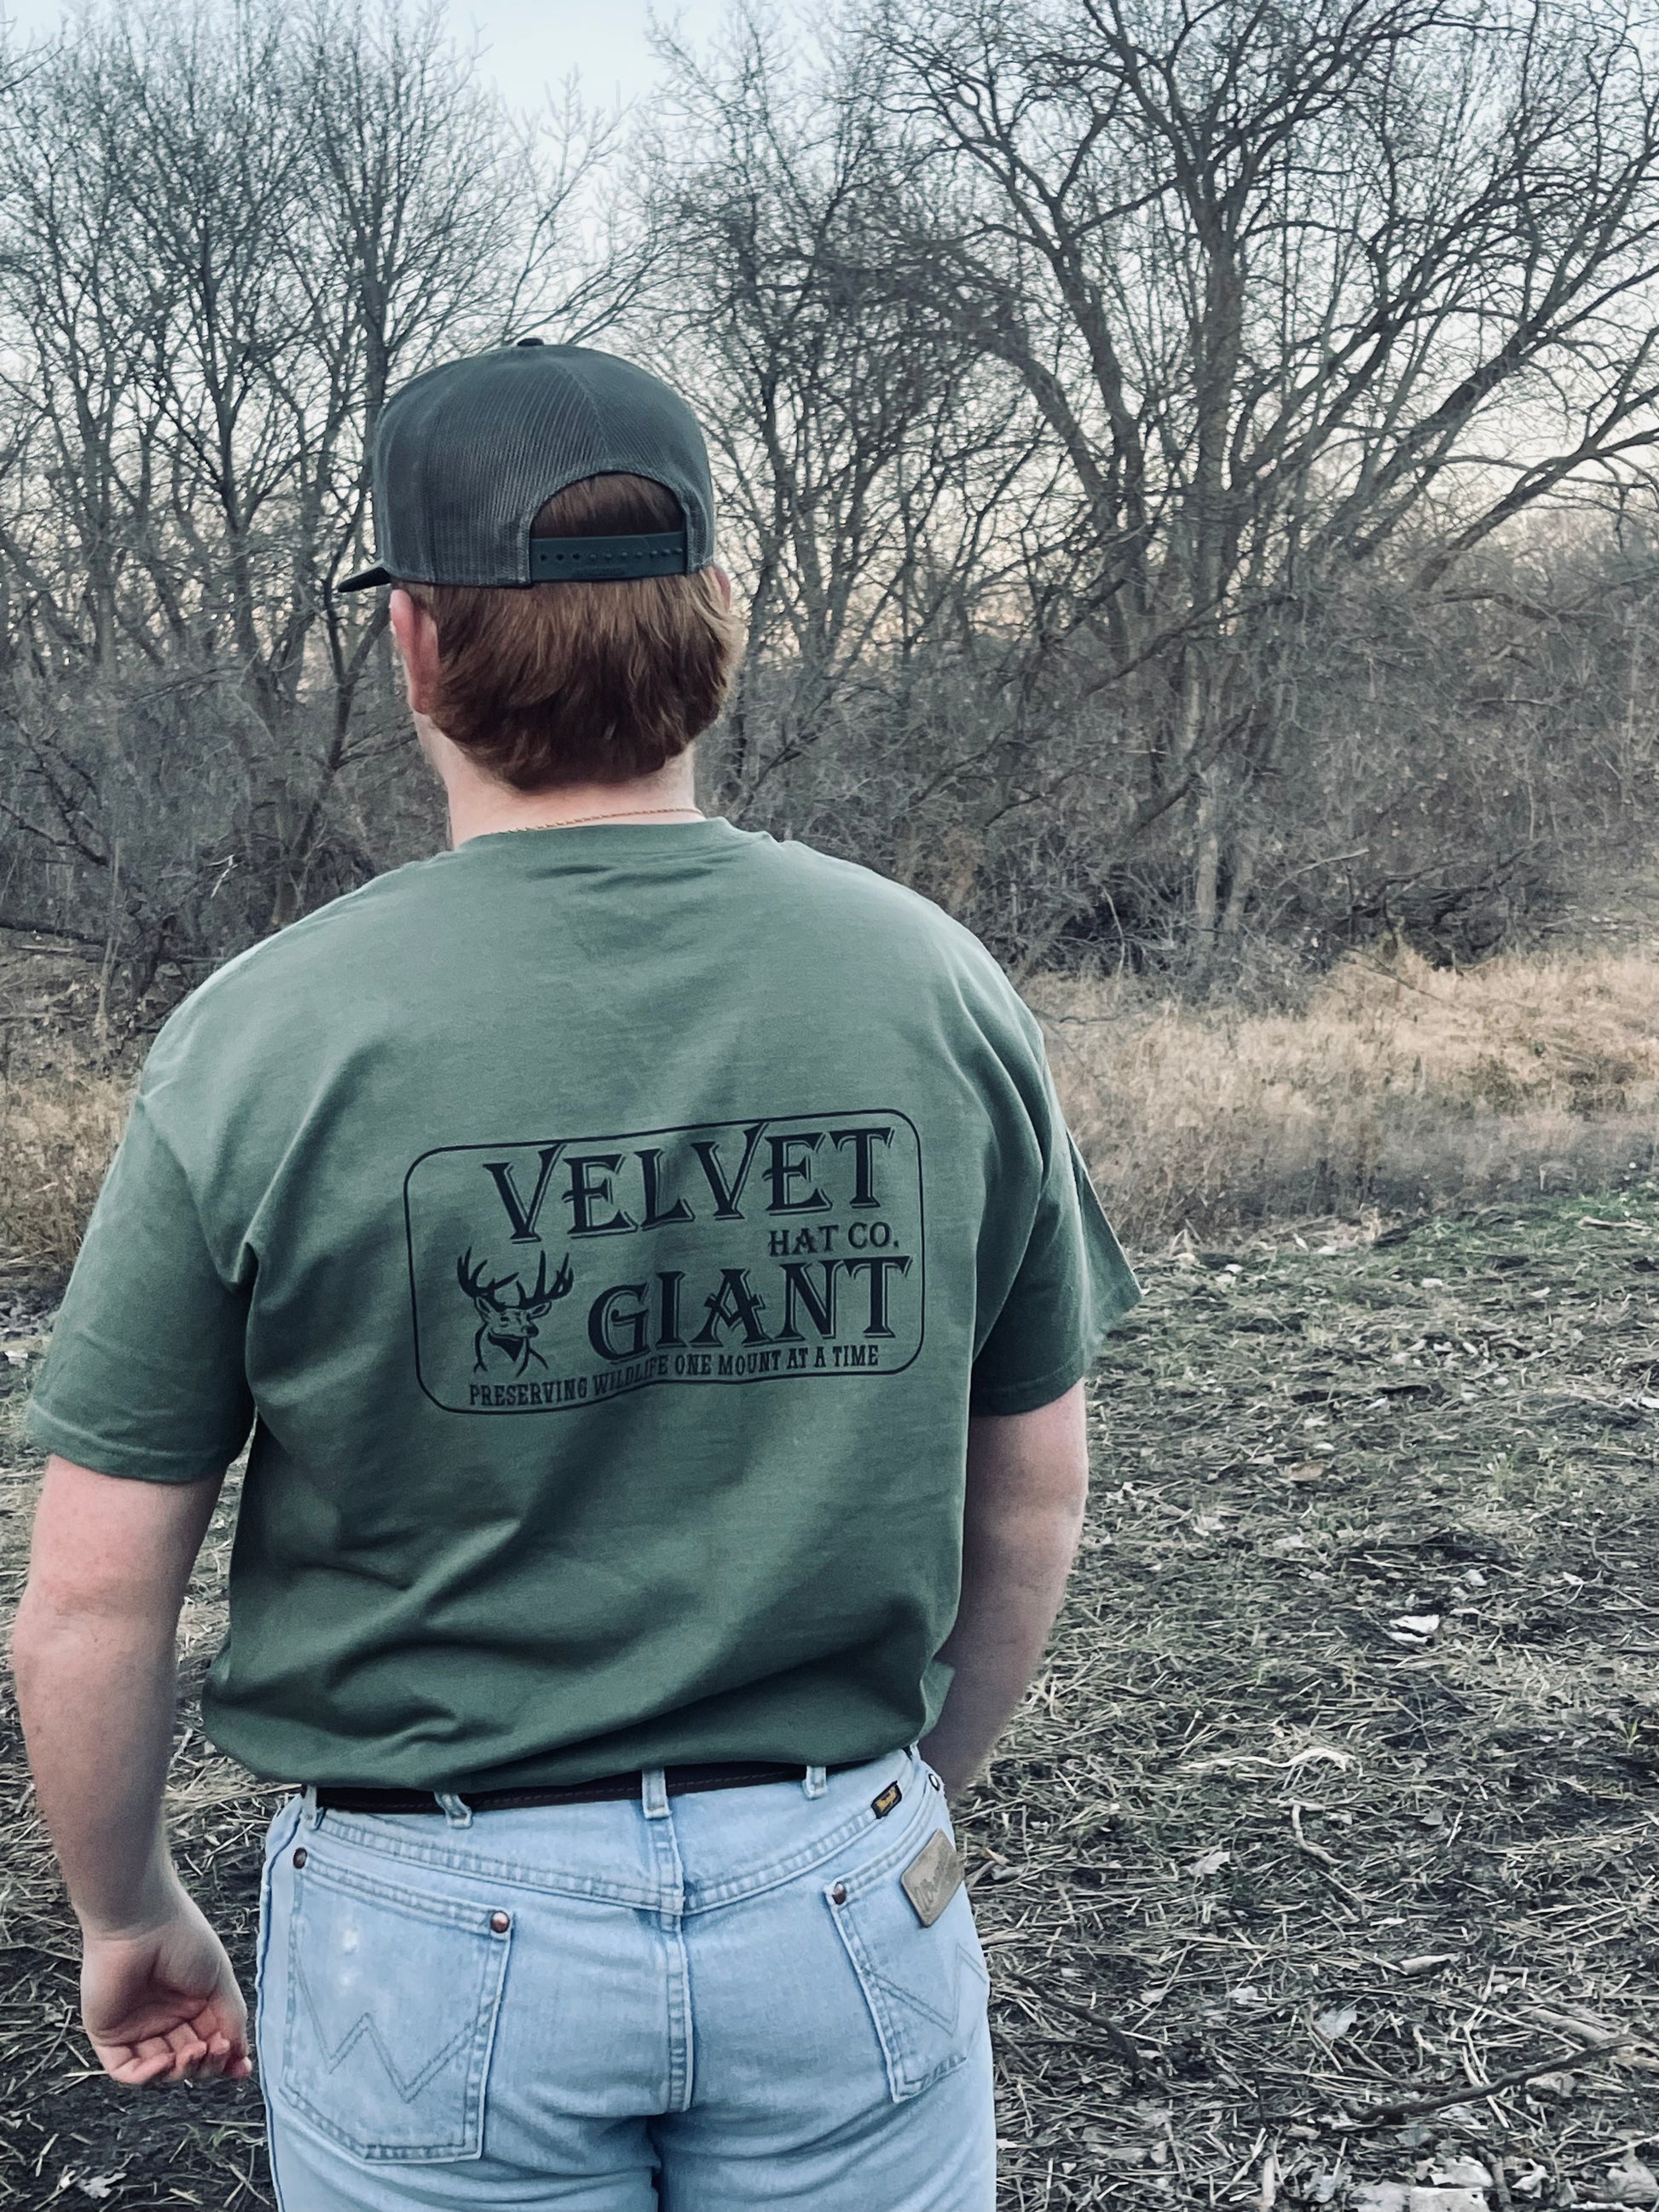 Velvet Giant Hat co